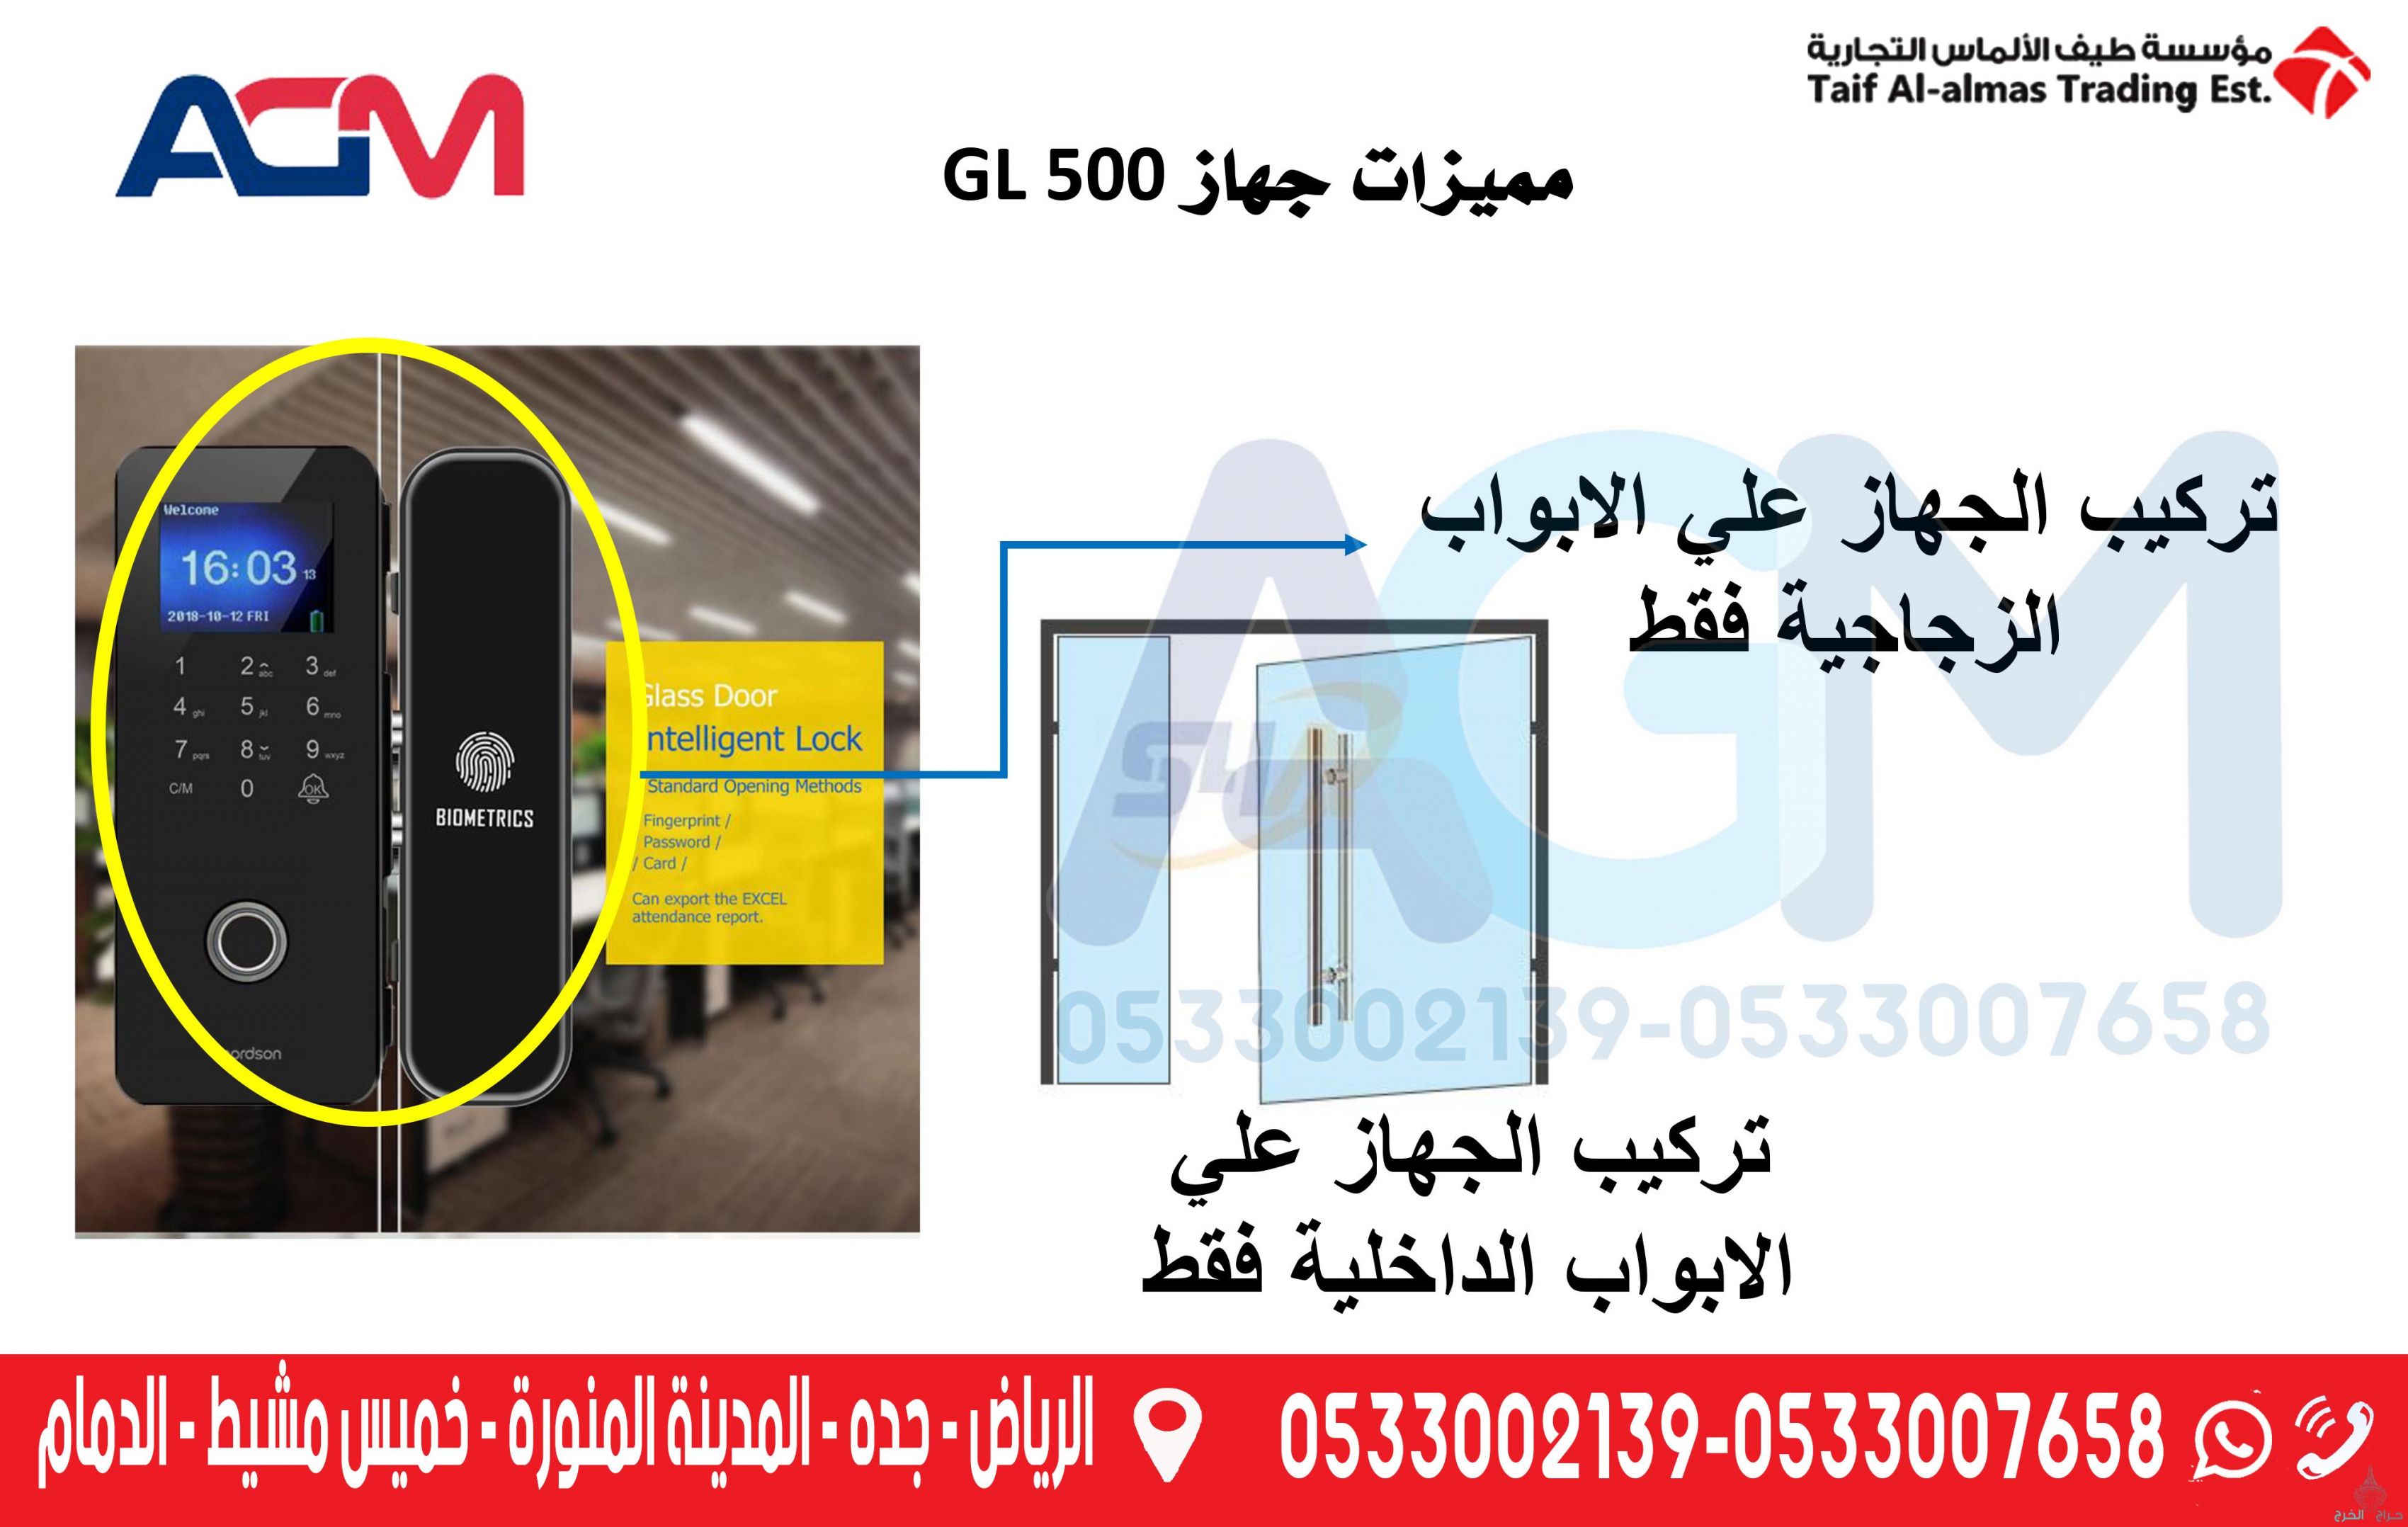  اكسس كنترول - قفل الكتروني Smart Lock للابواب الزجاجية GL-500 